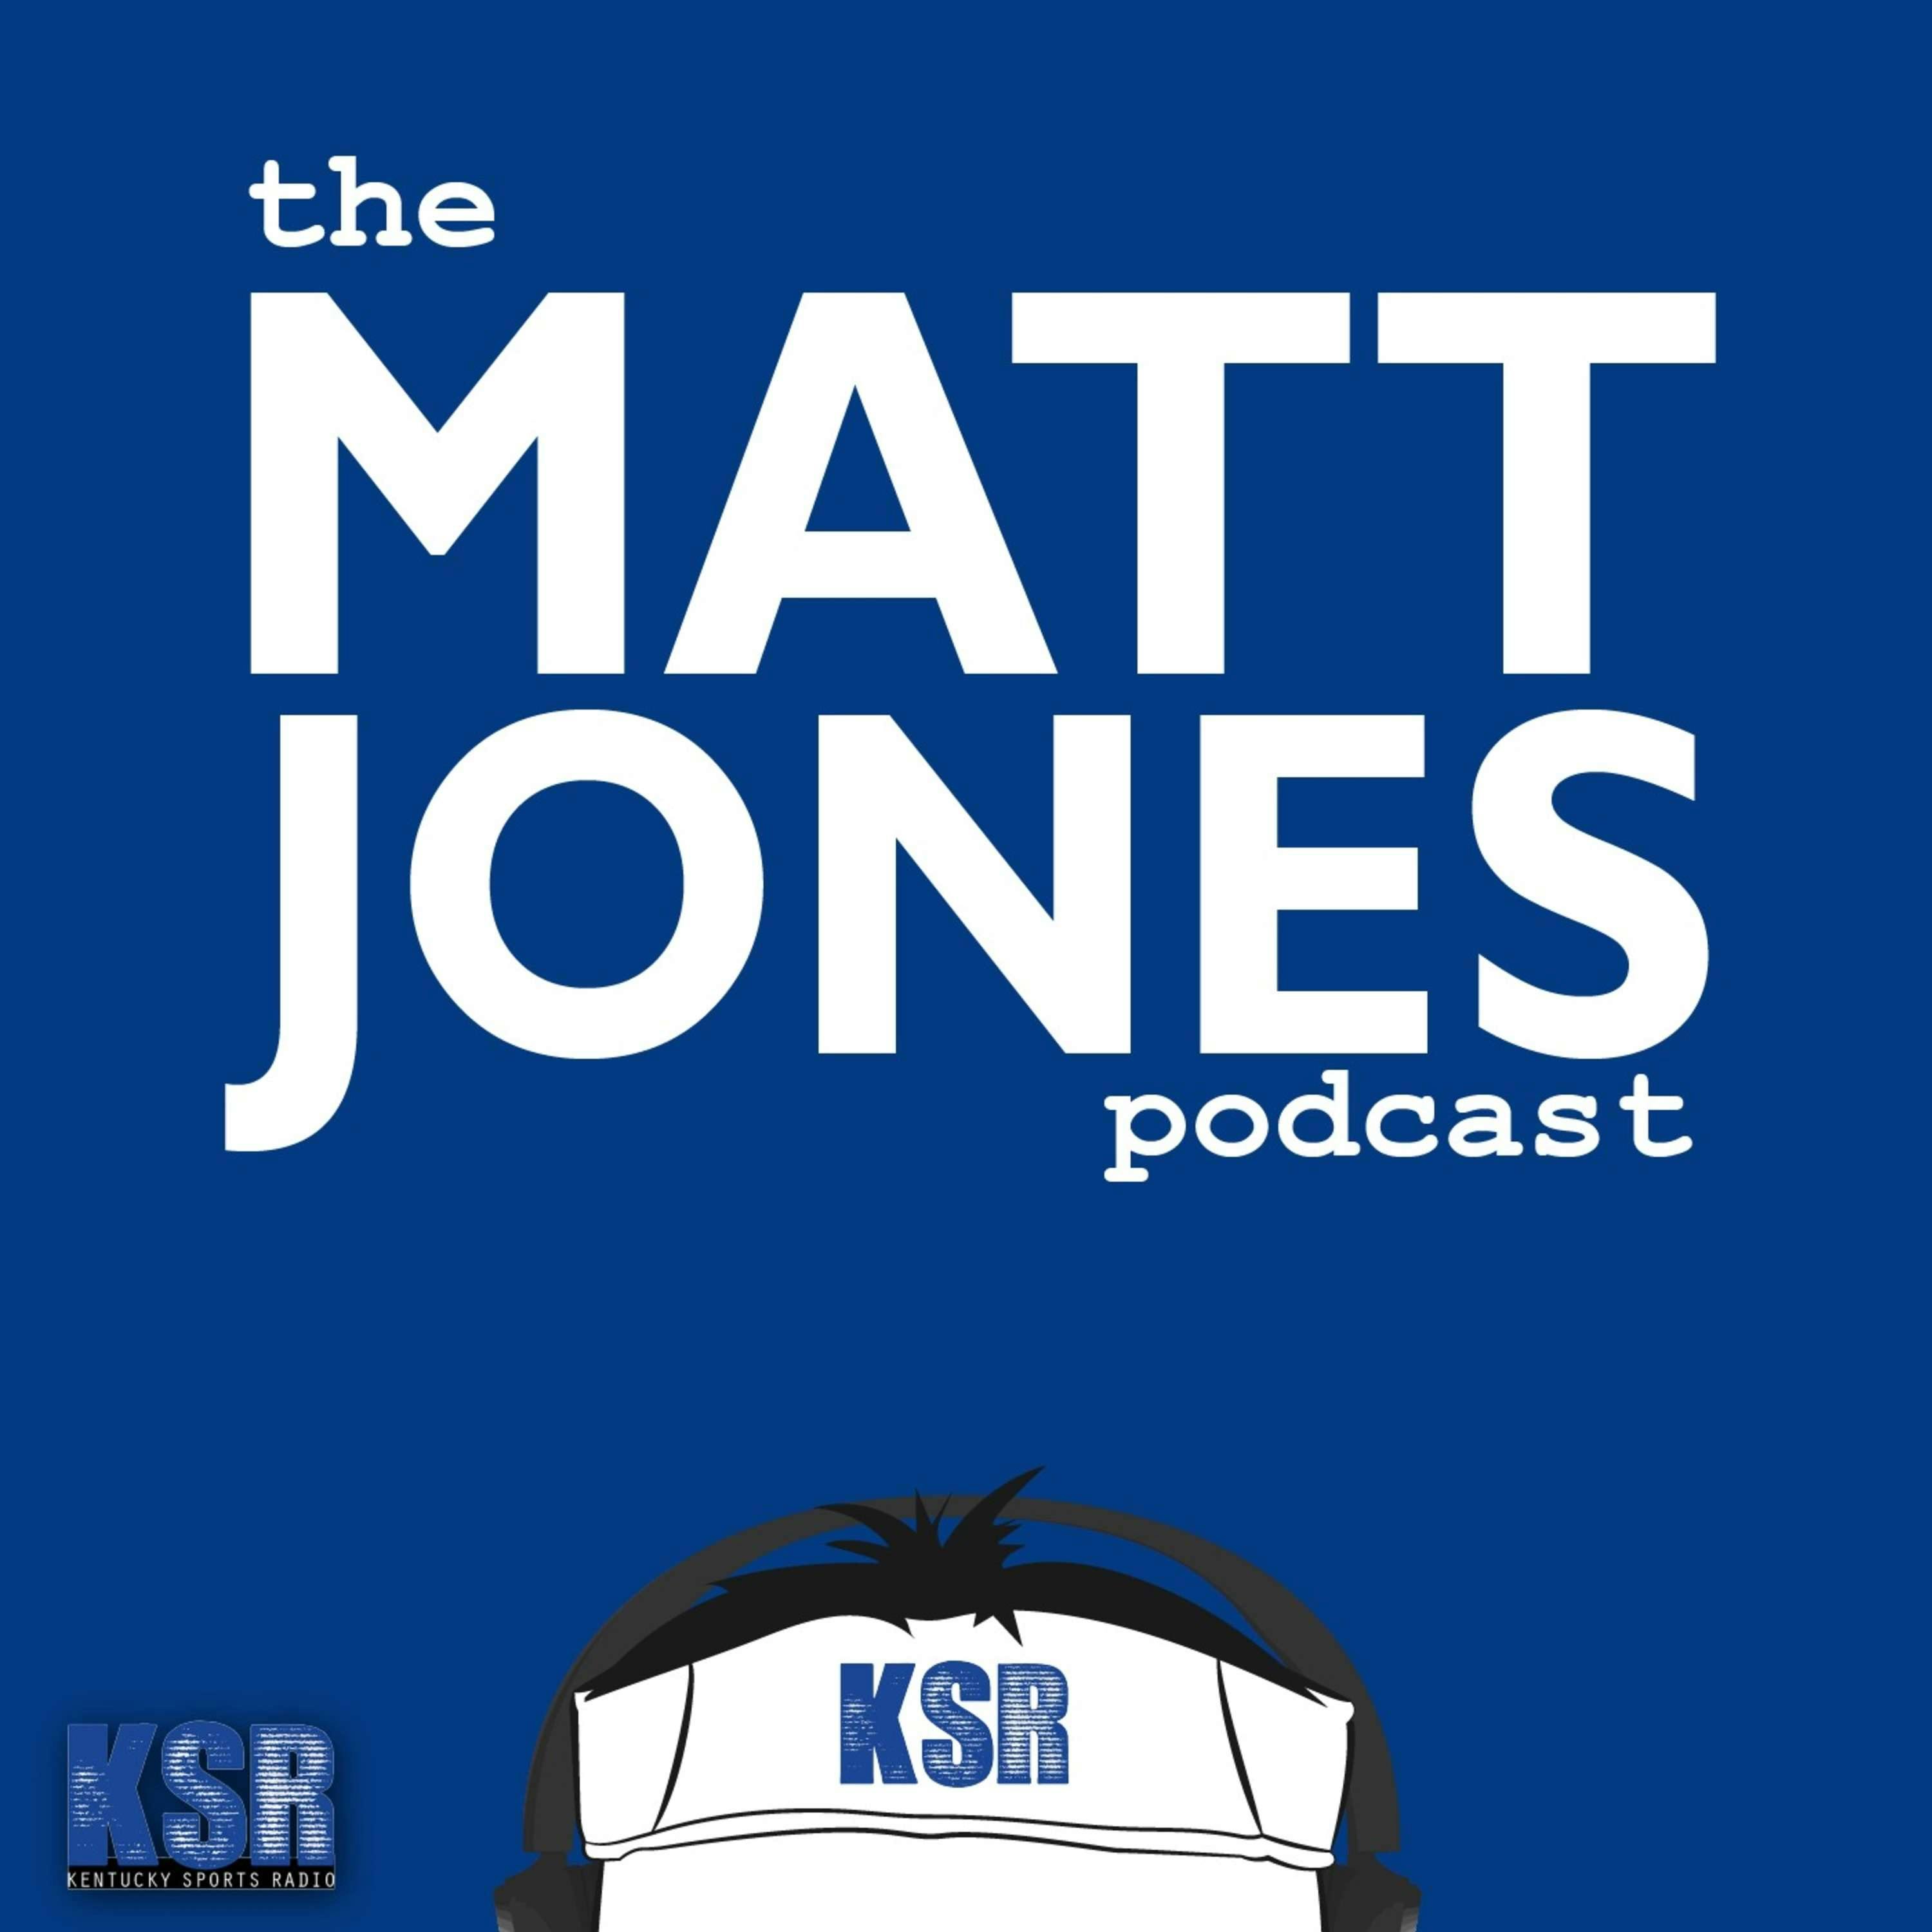 The Matt Jones Podcast: E64 with Dr. Ricky Jones